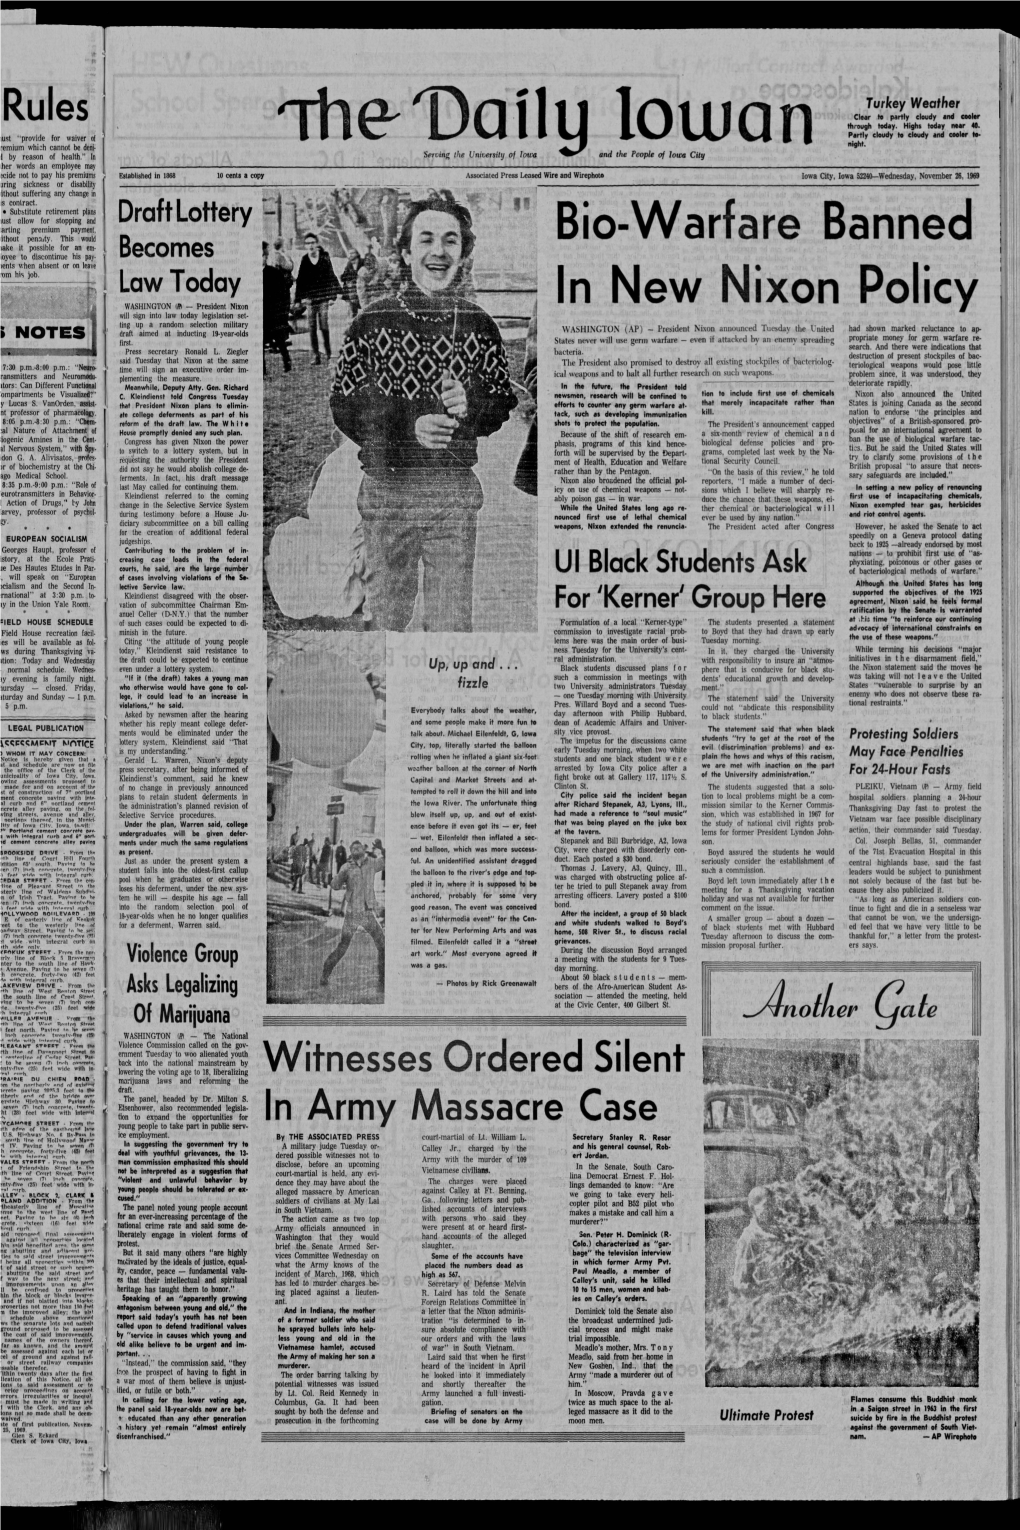 Daily Iowan (Iowa City, Iowa), 1969-11-26